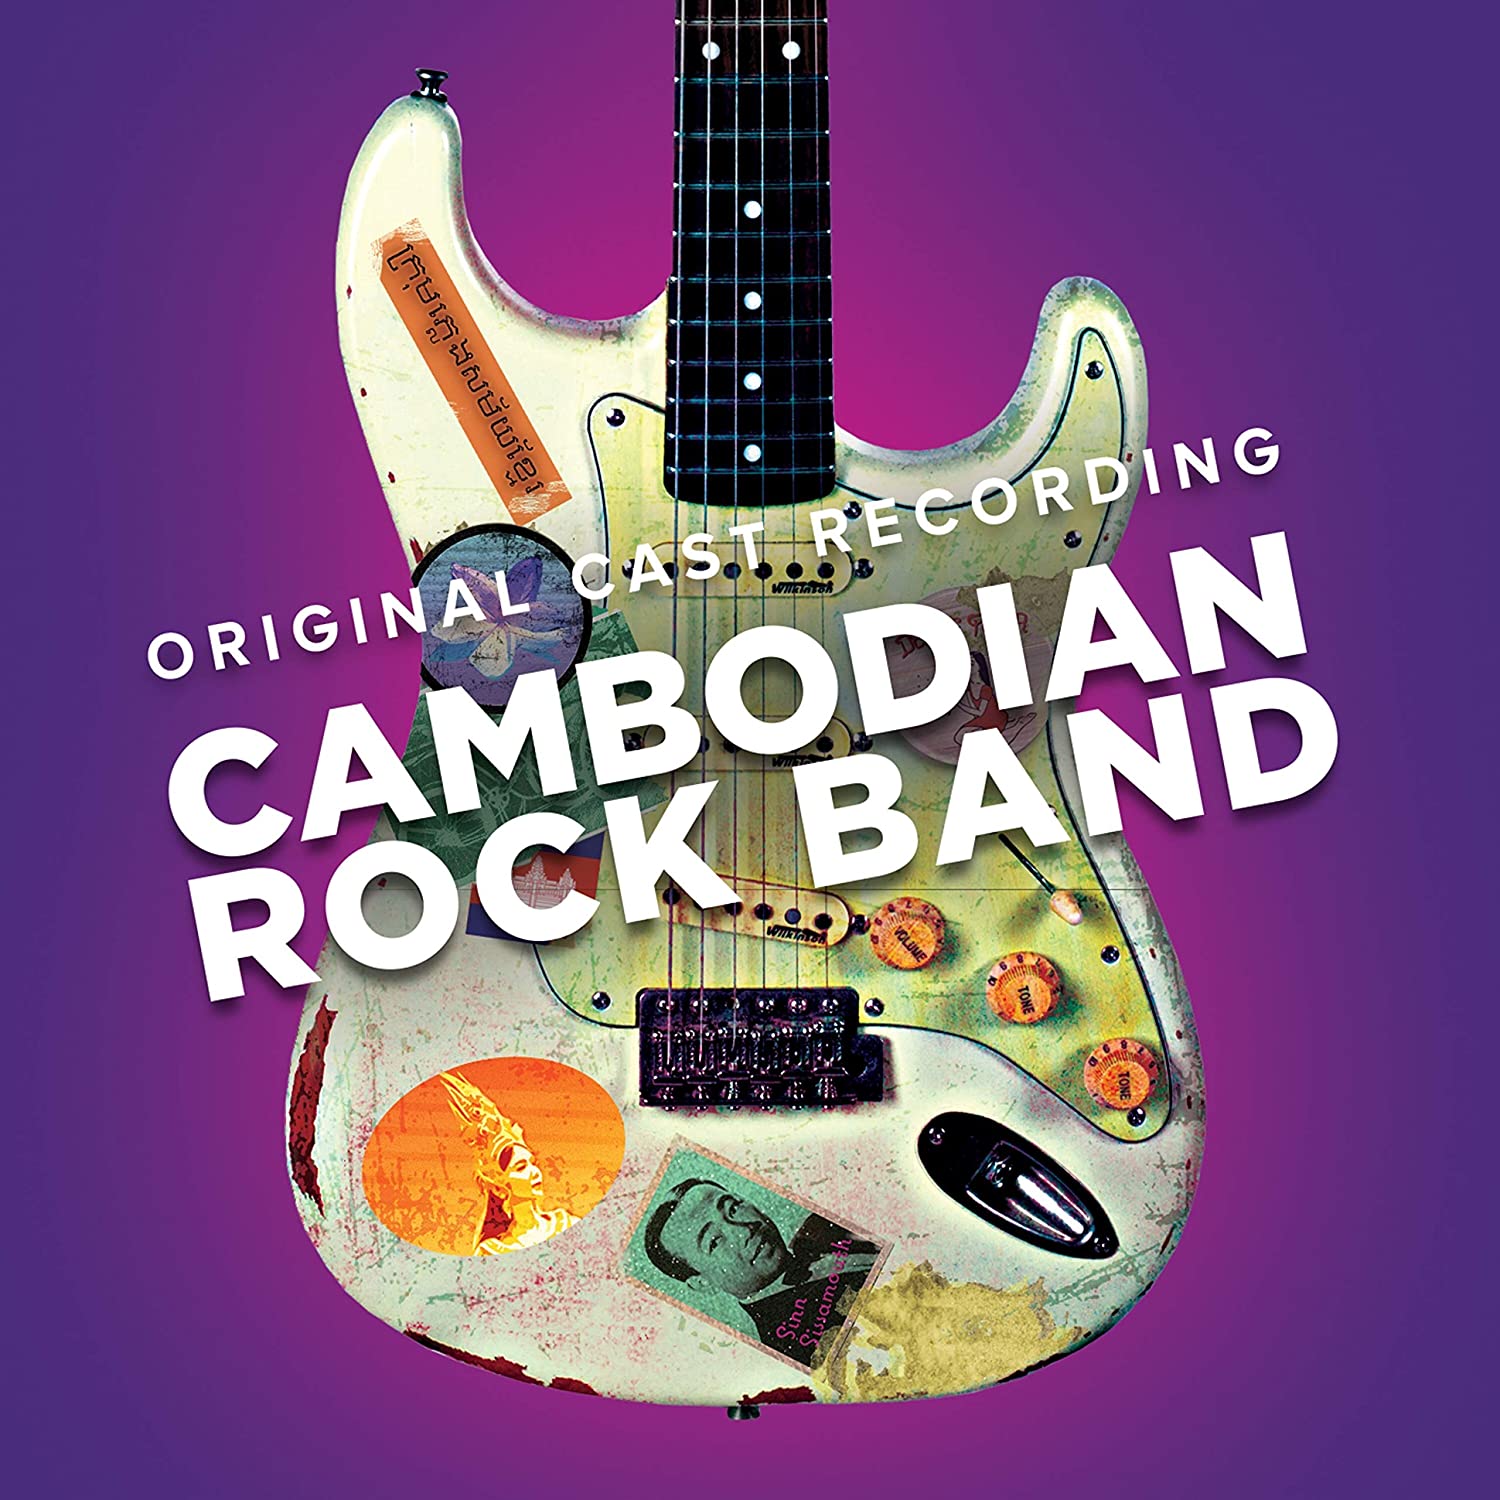 Cambodian Rock Band (Original Cast Recording) Album